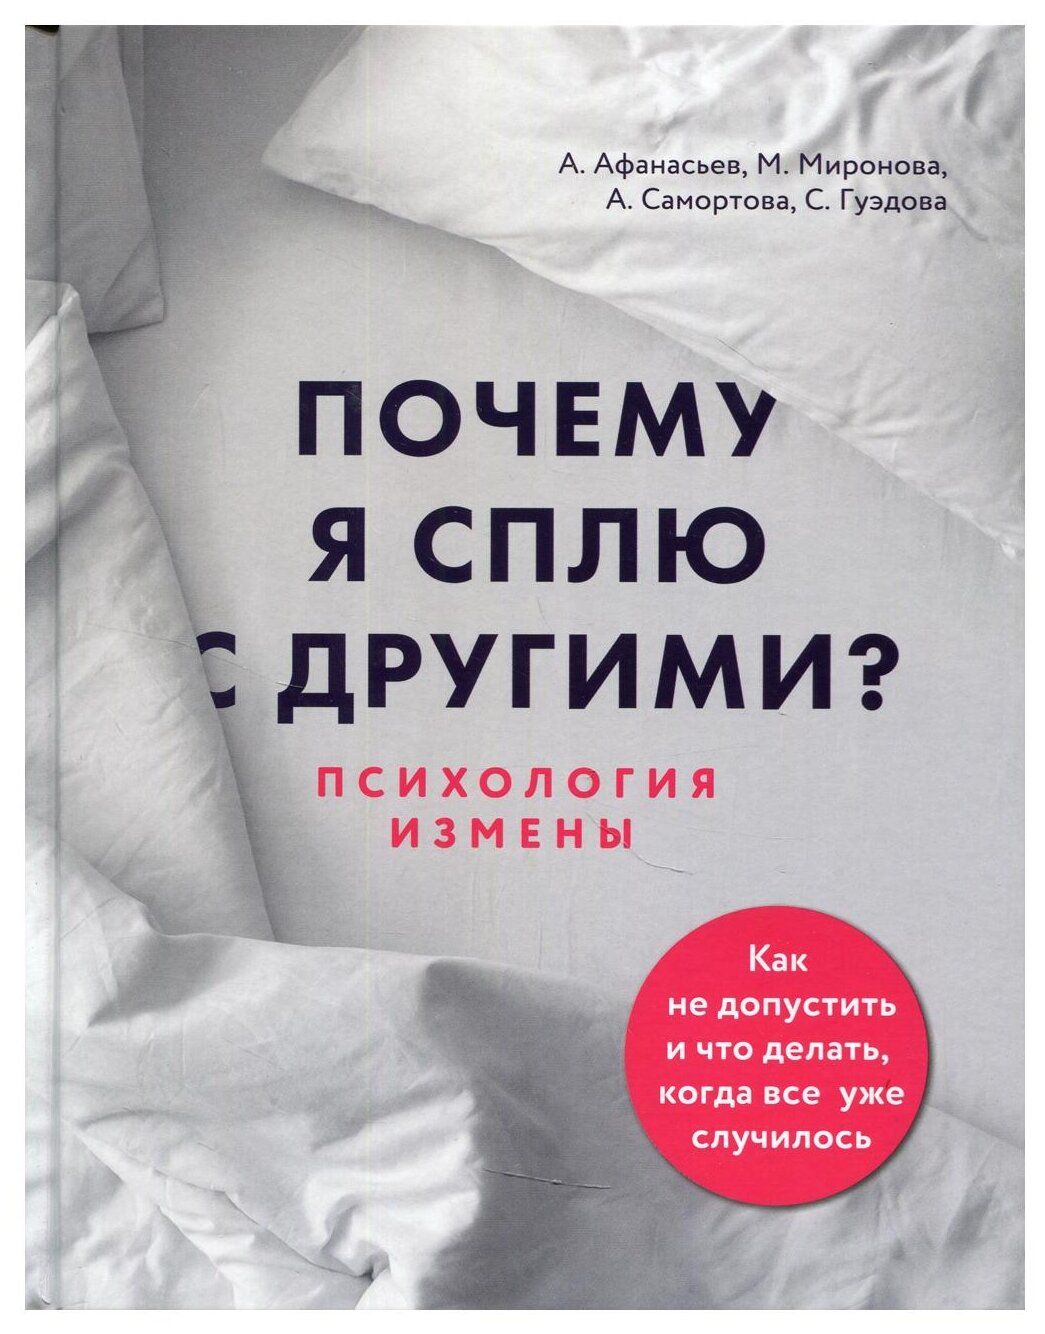 Почему я сплю с другими Психология измены Книга Афанасьев Миронова Самортова 16+